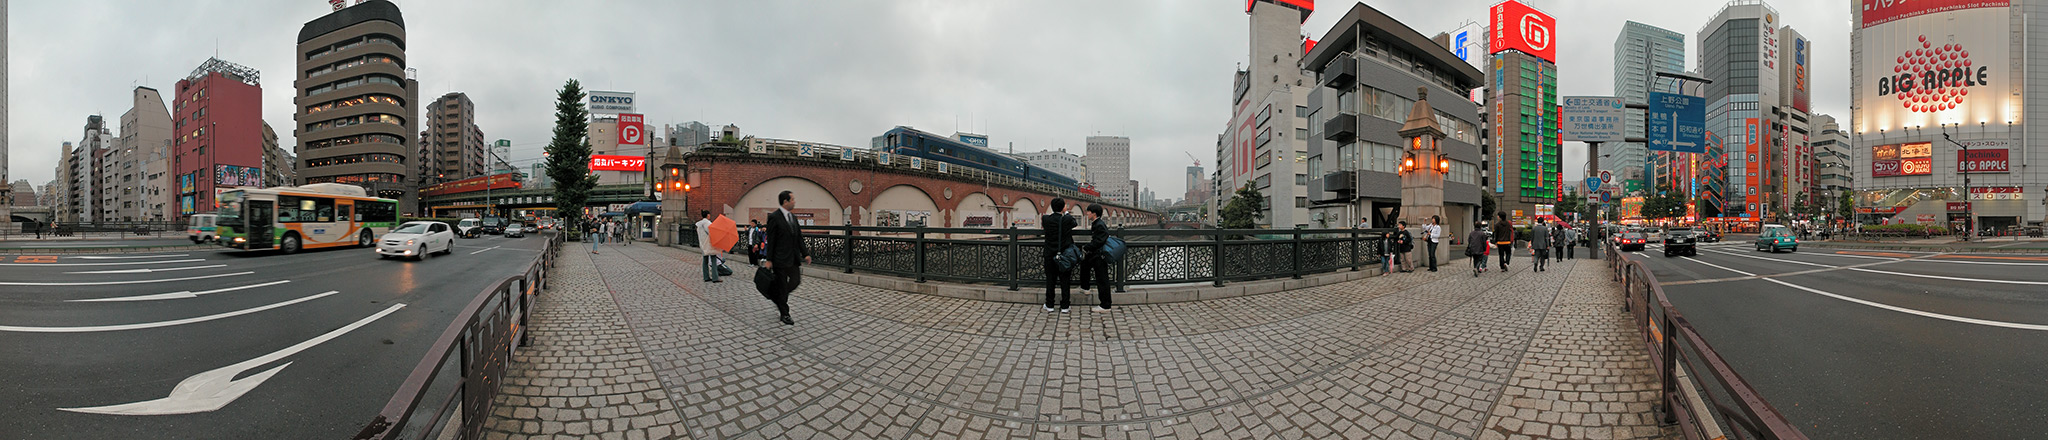 万世橋から撮影した交通博物館のパノラマ